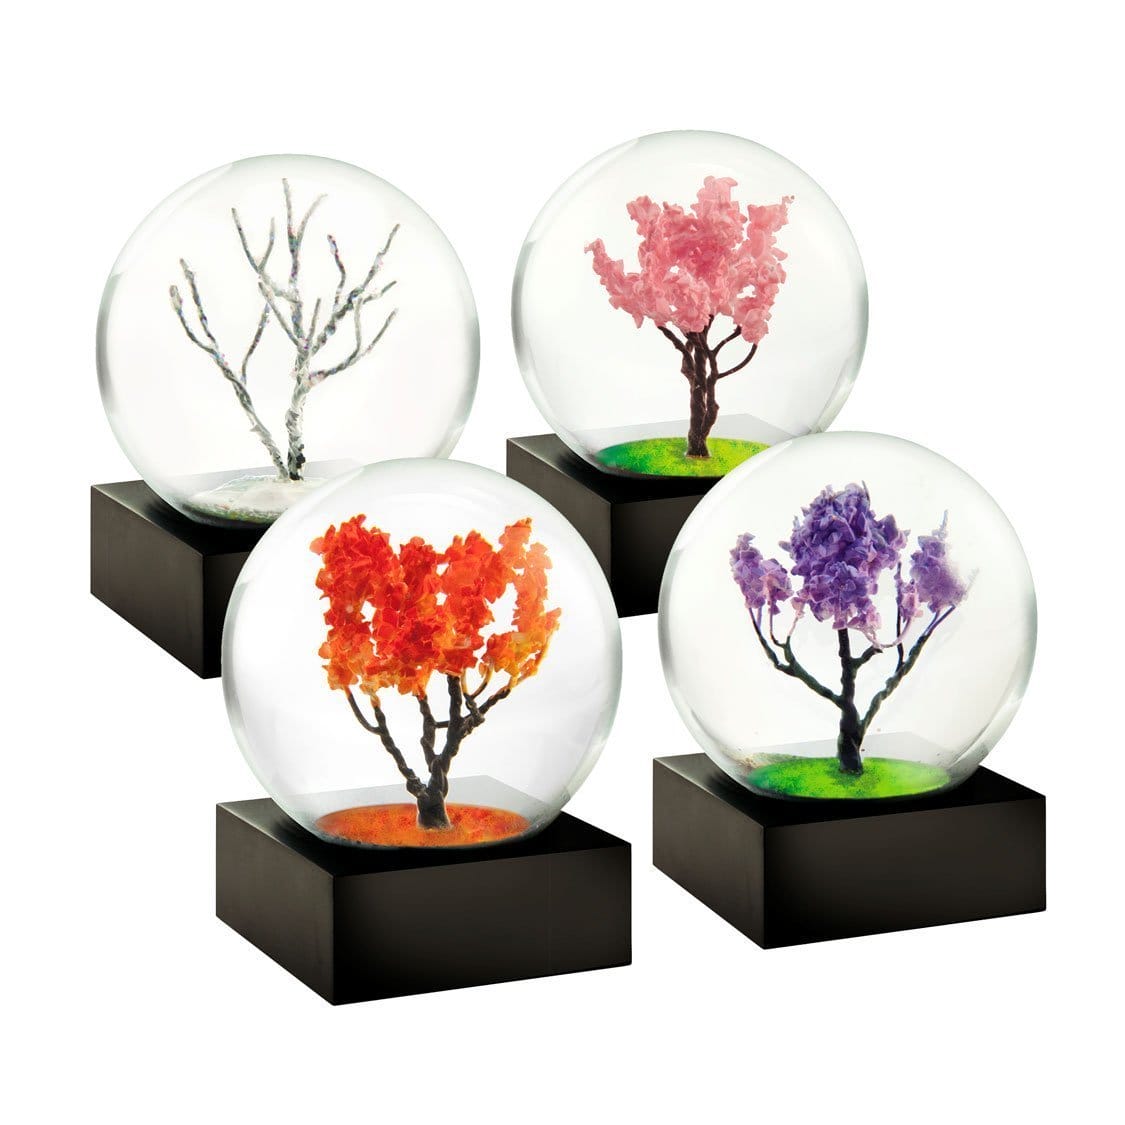 Mini Snow Globes: Four Seasons